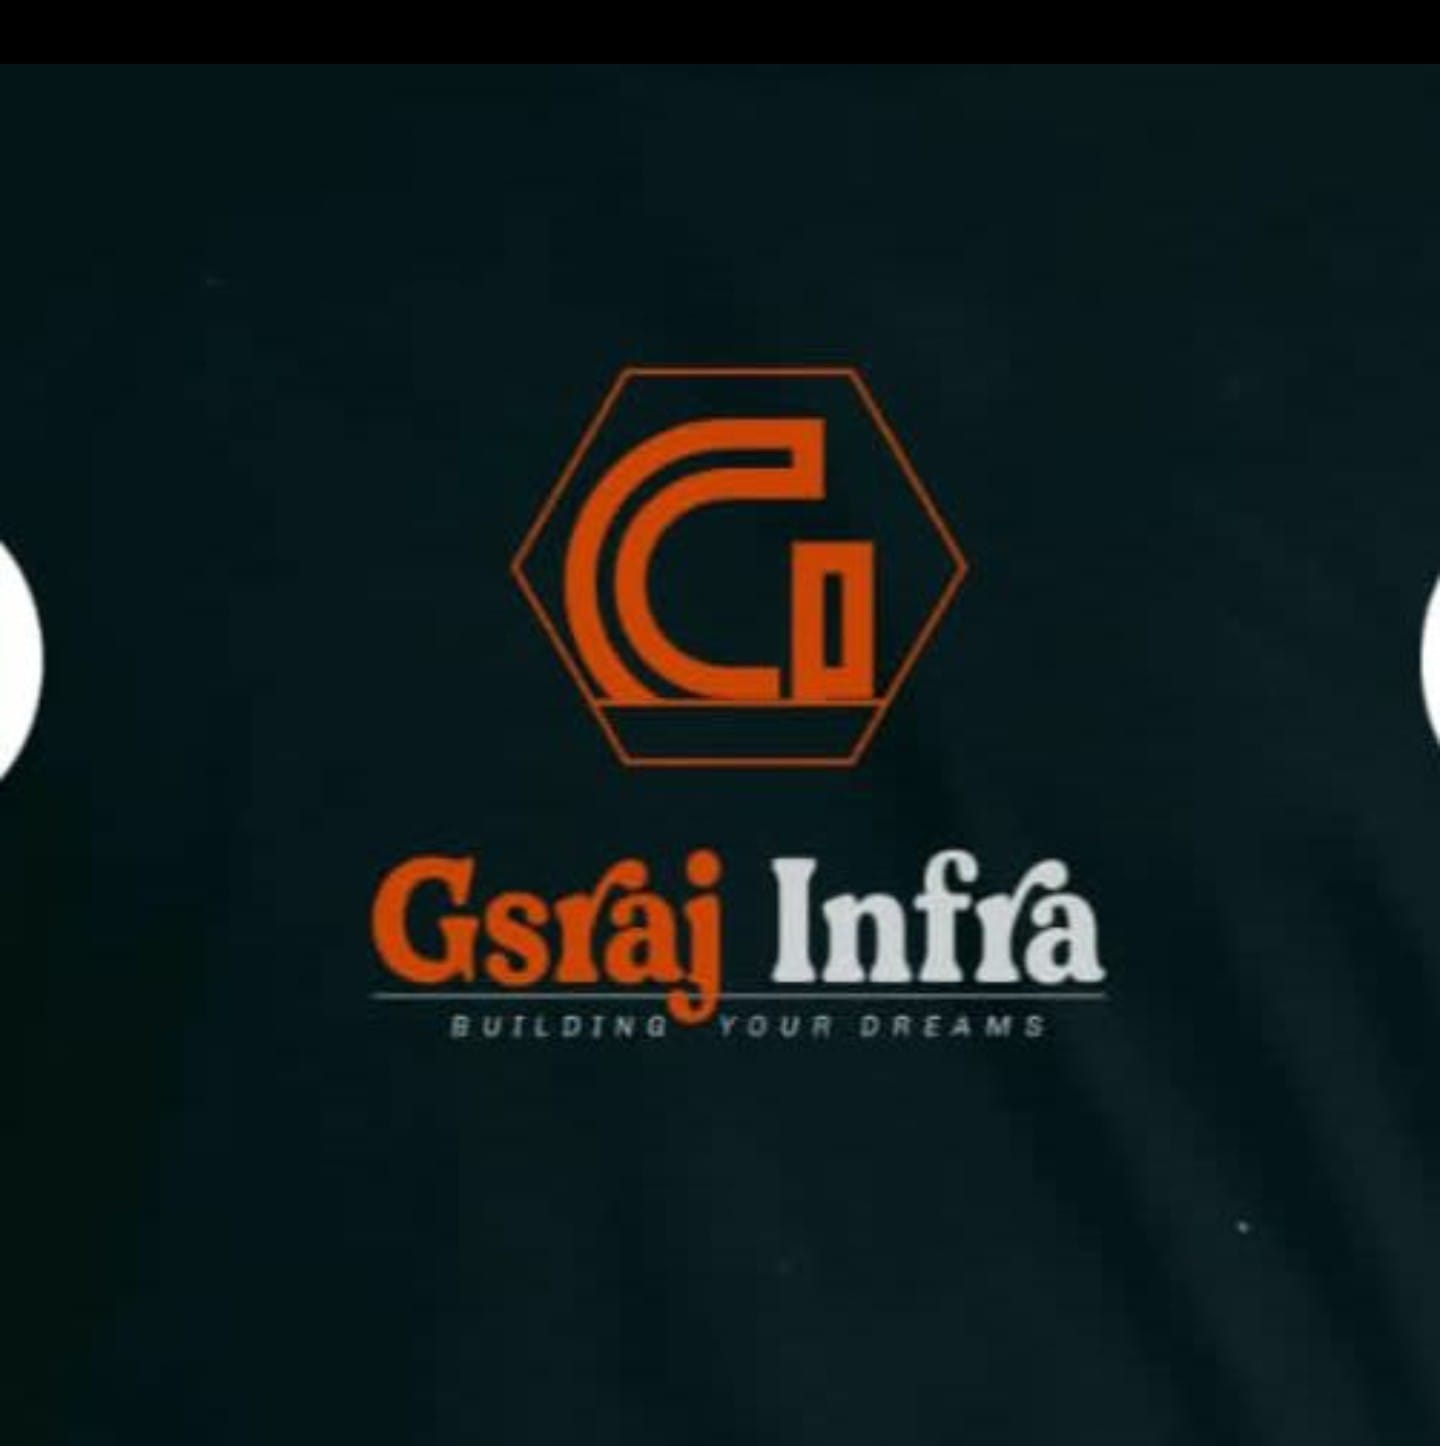 Gsraj infra Pvt Ltd - Logo